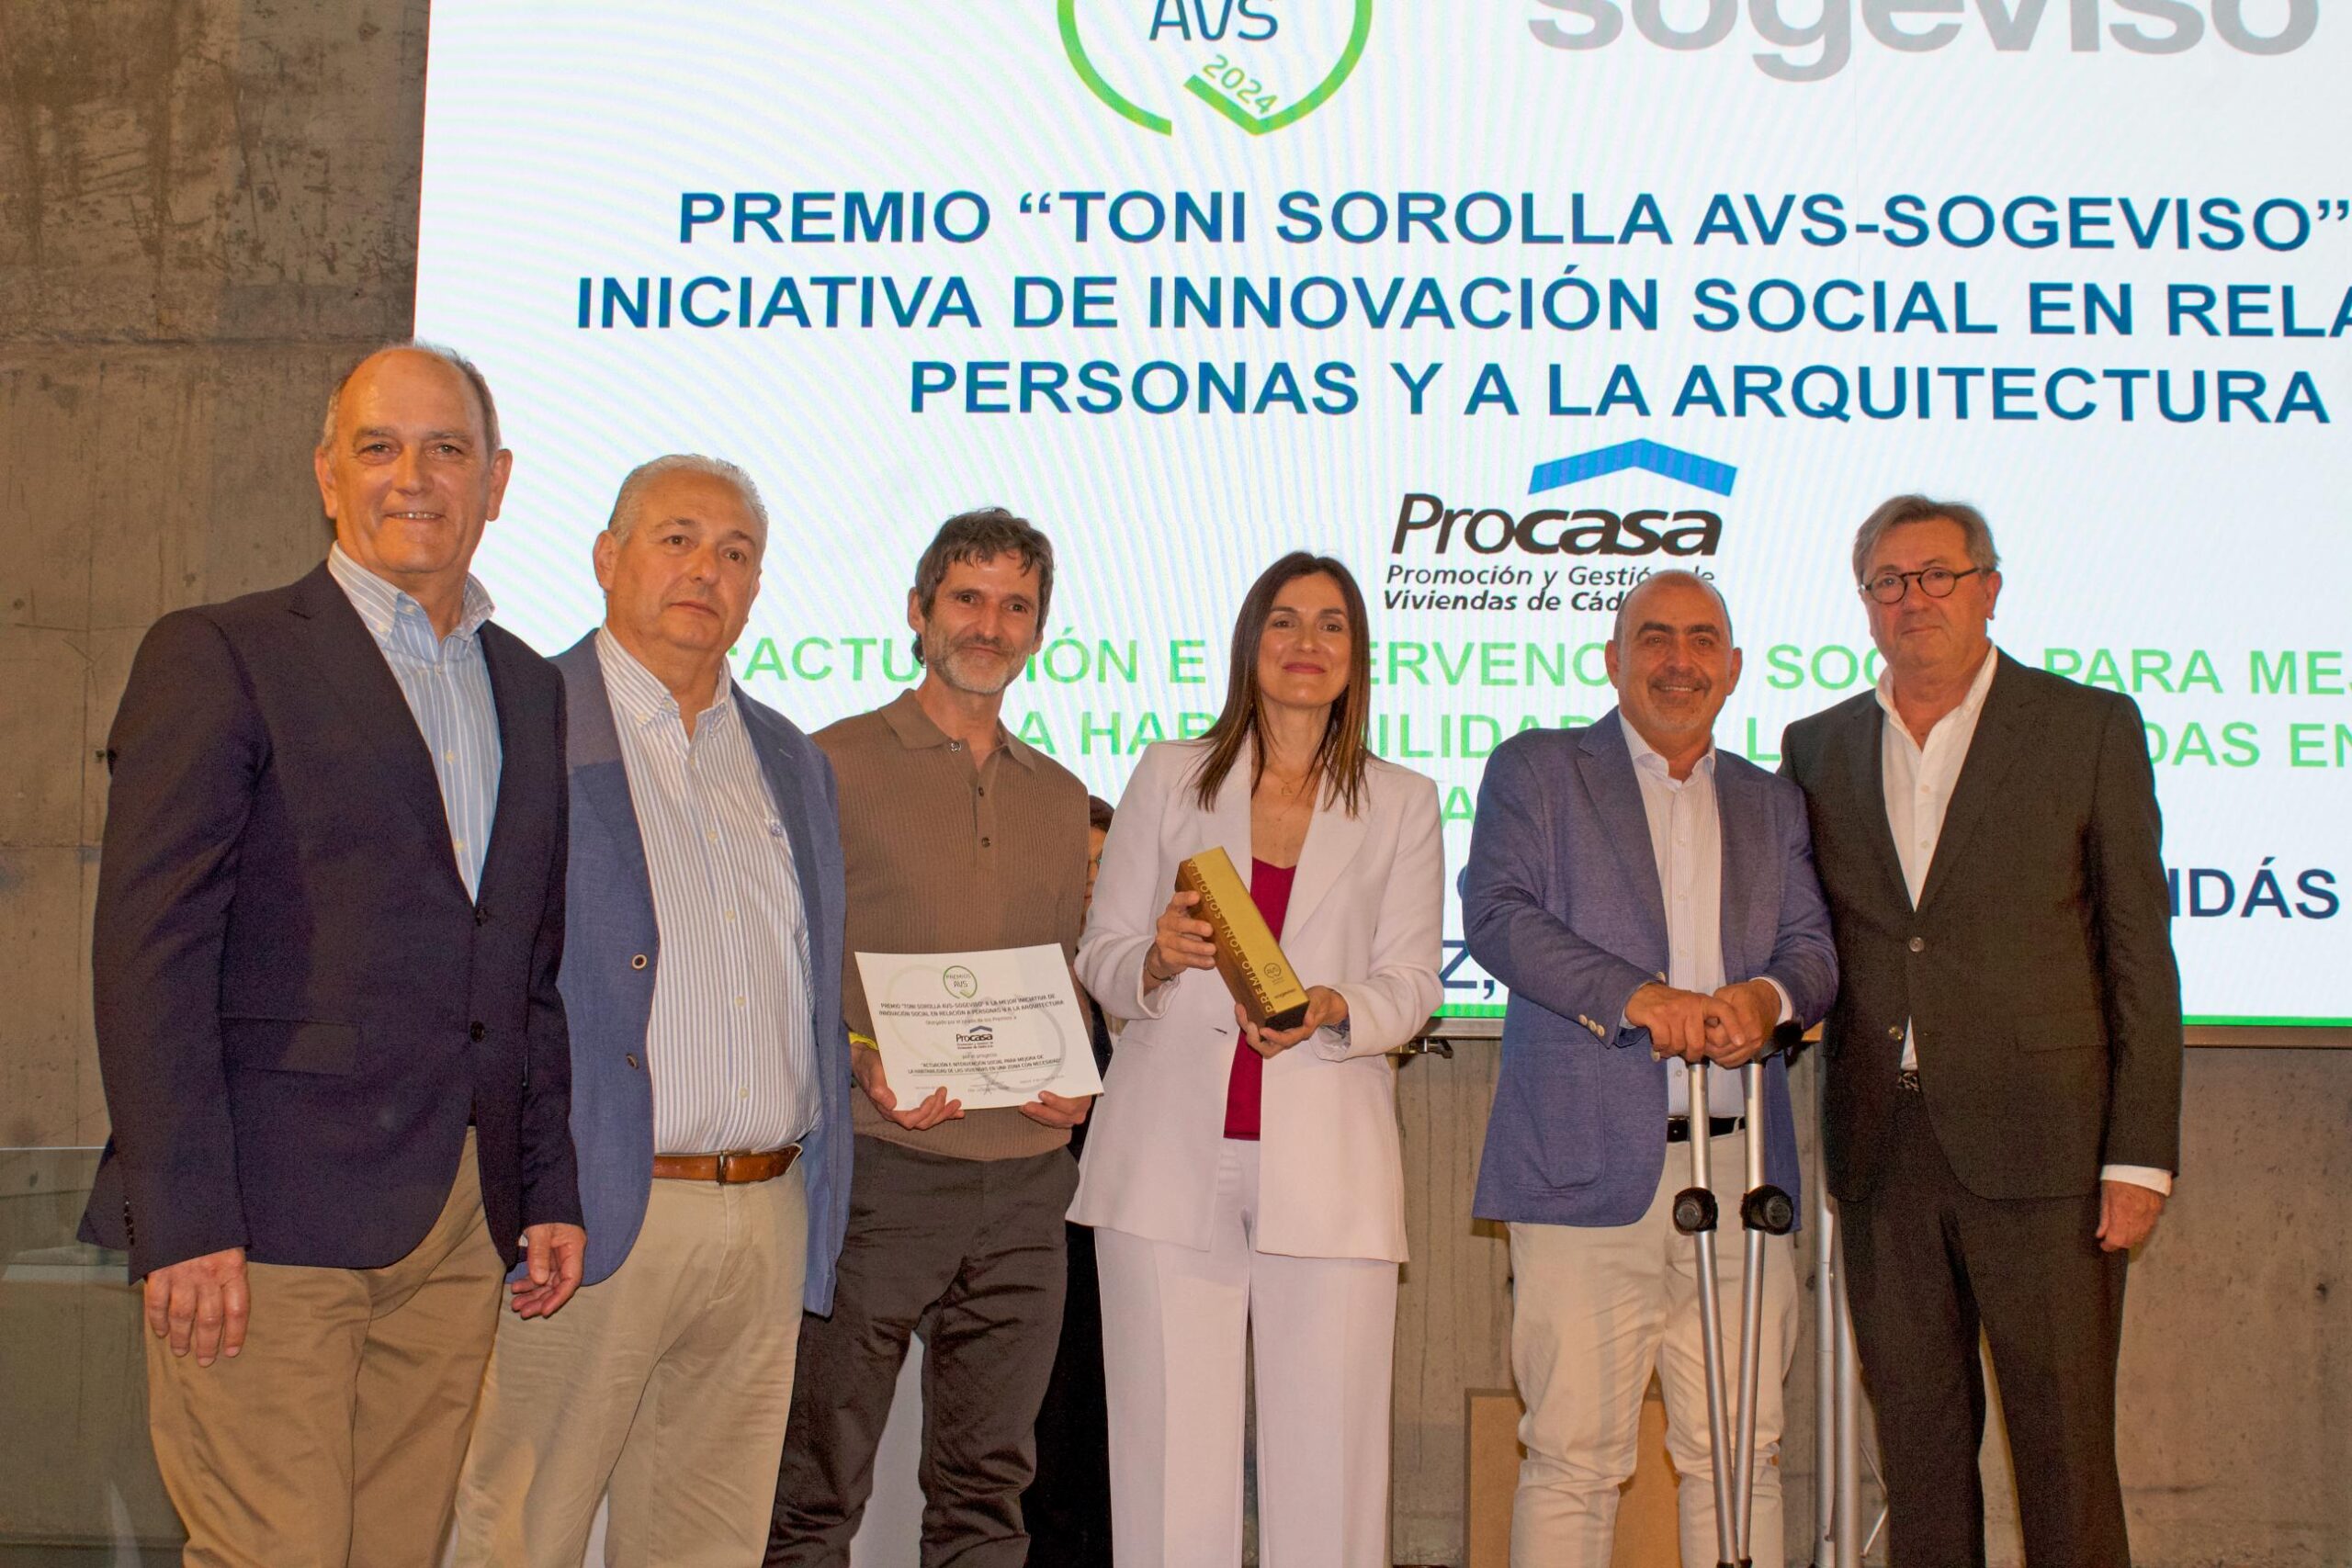 Entregado o primeiro Premio Toni Sorolla, AVS-Sogeviso